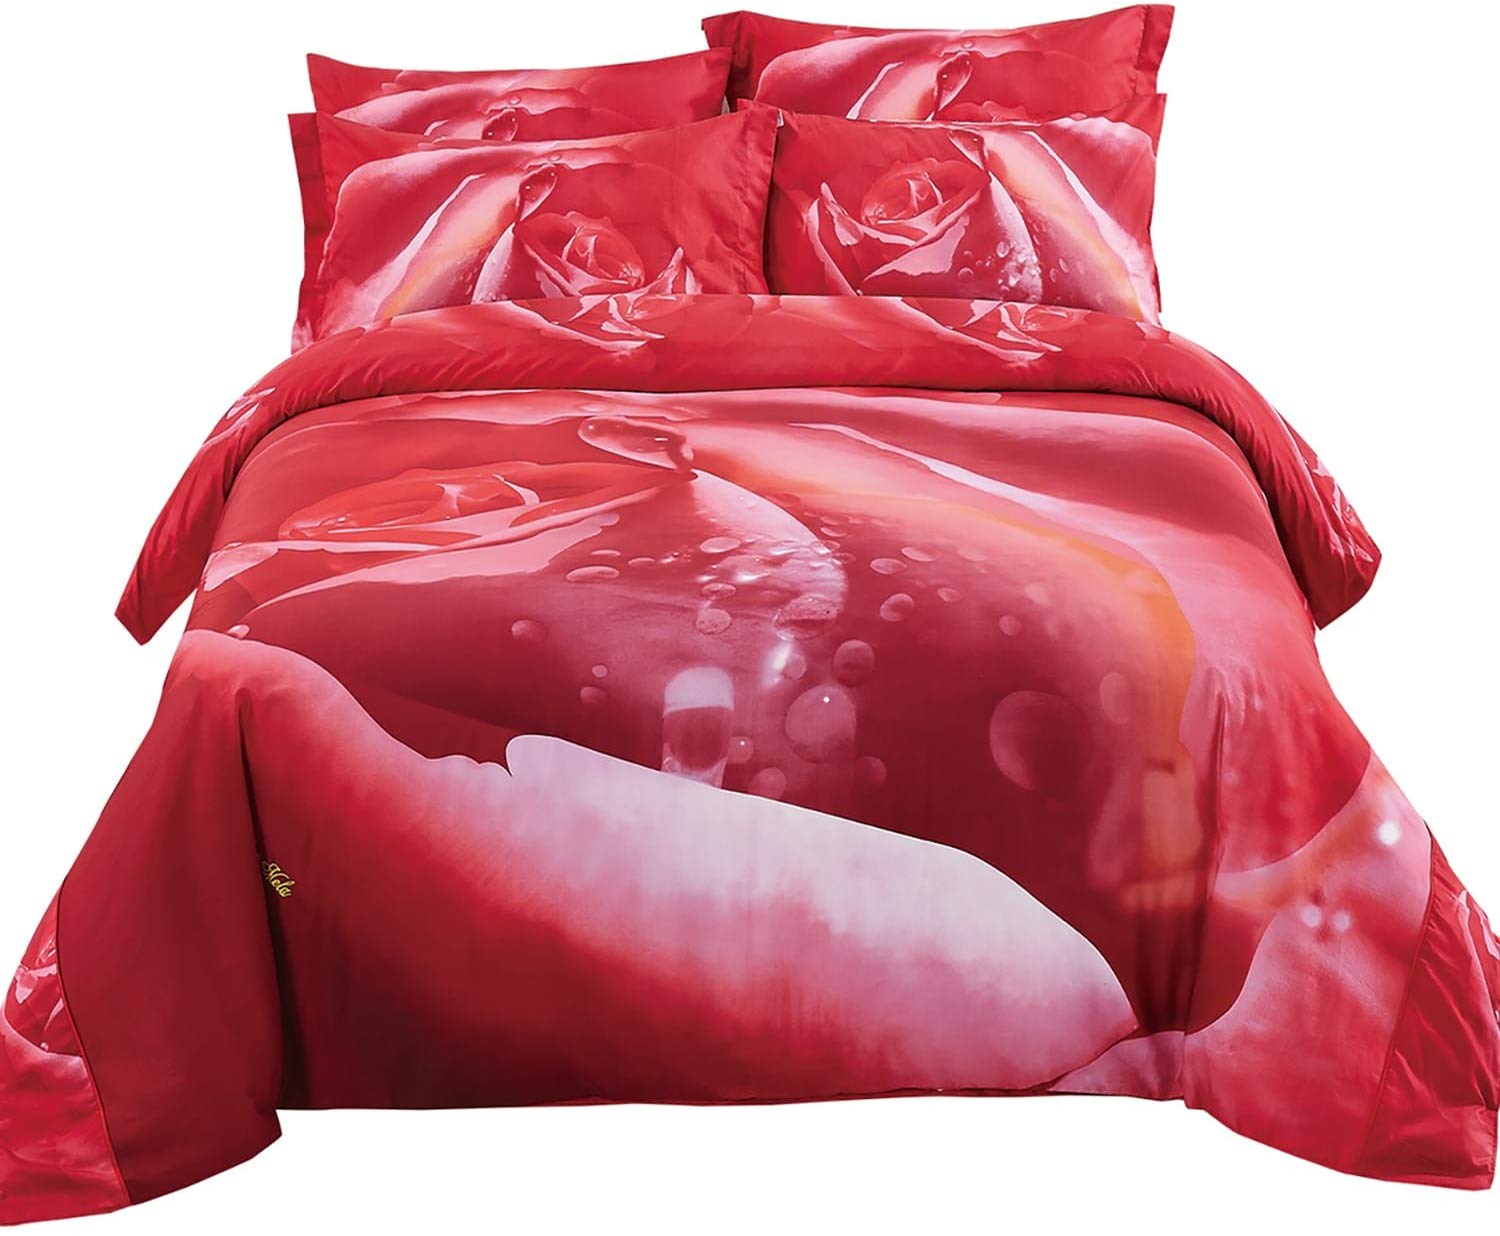 Red Roses Luxury Duvet Cover Bedding Set